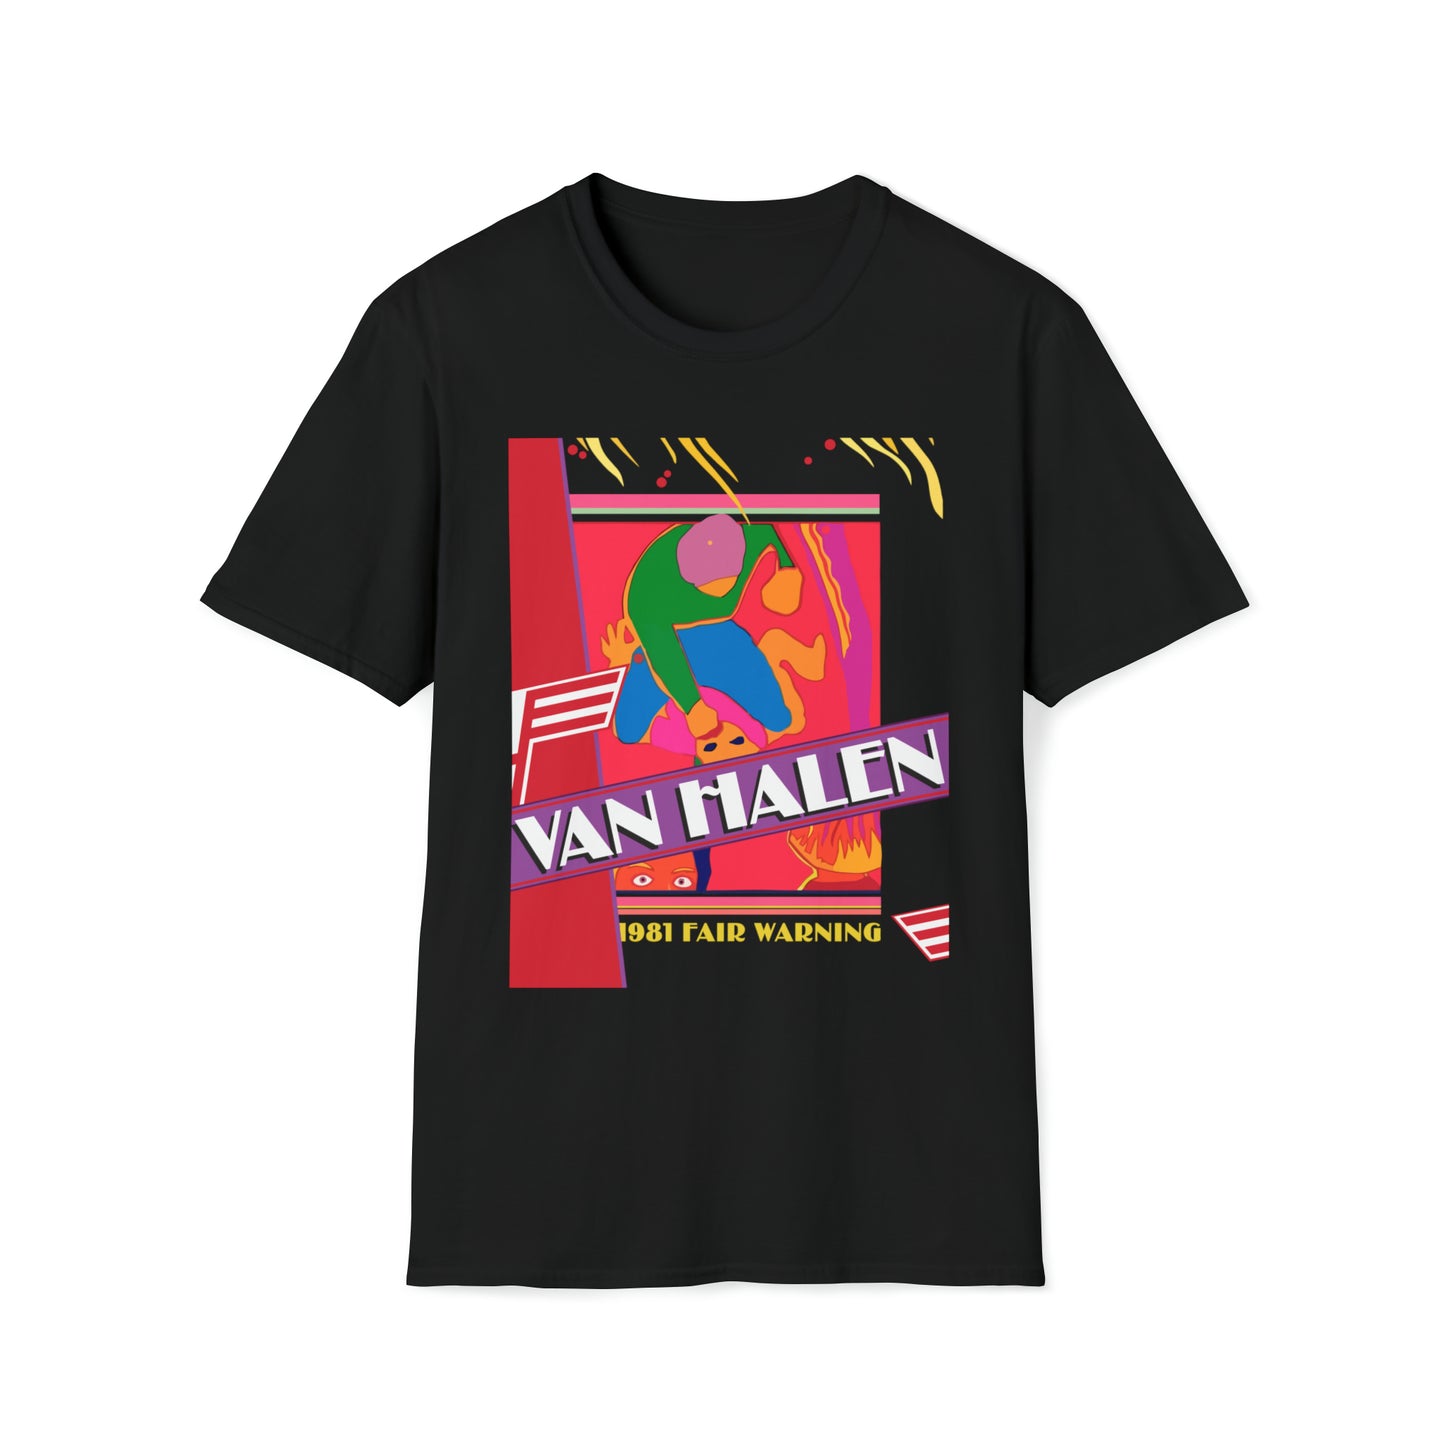 Van Halen 1981 Fair Warning Tour Book T-Shirt